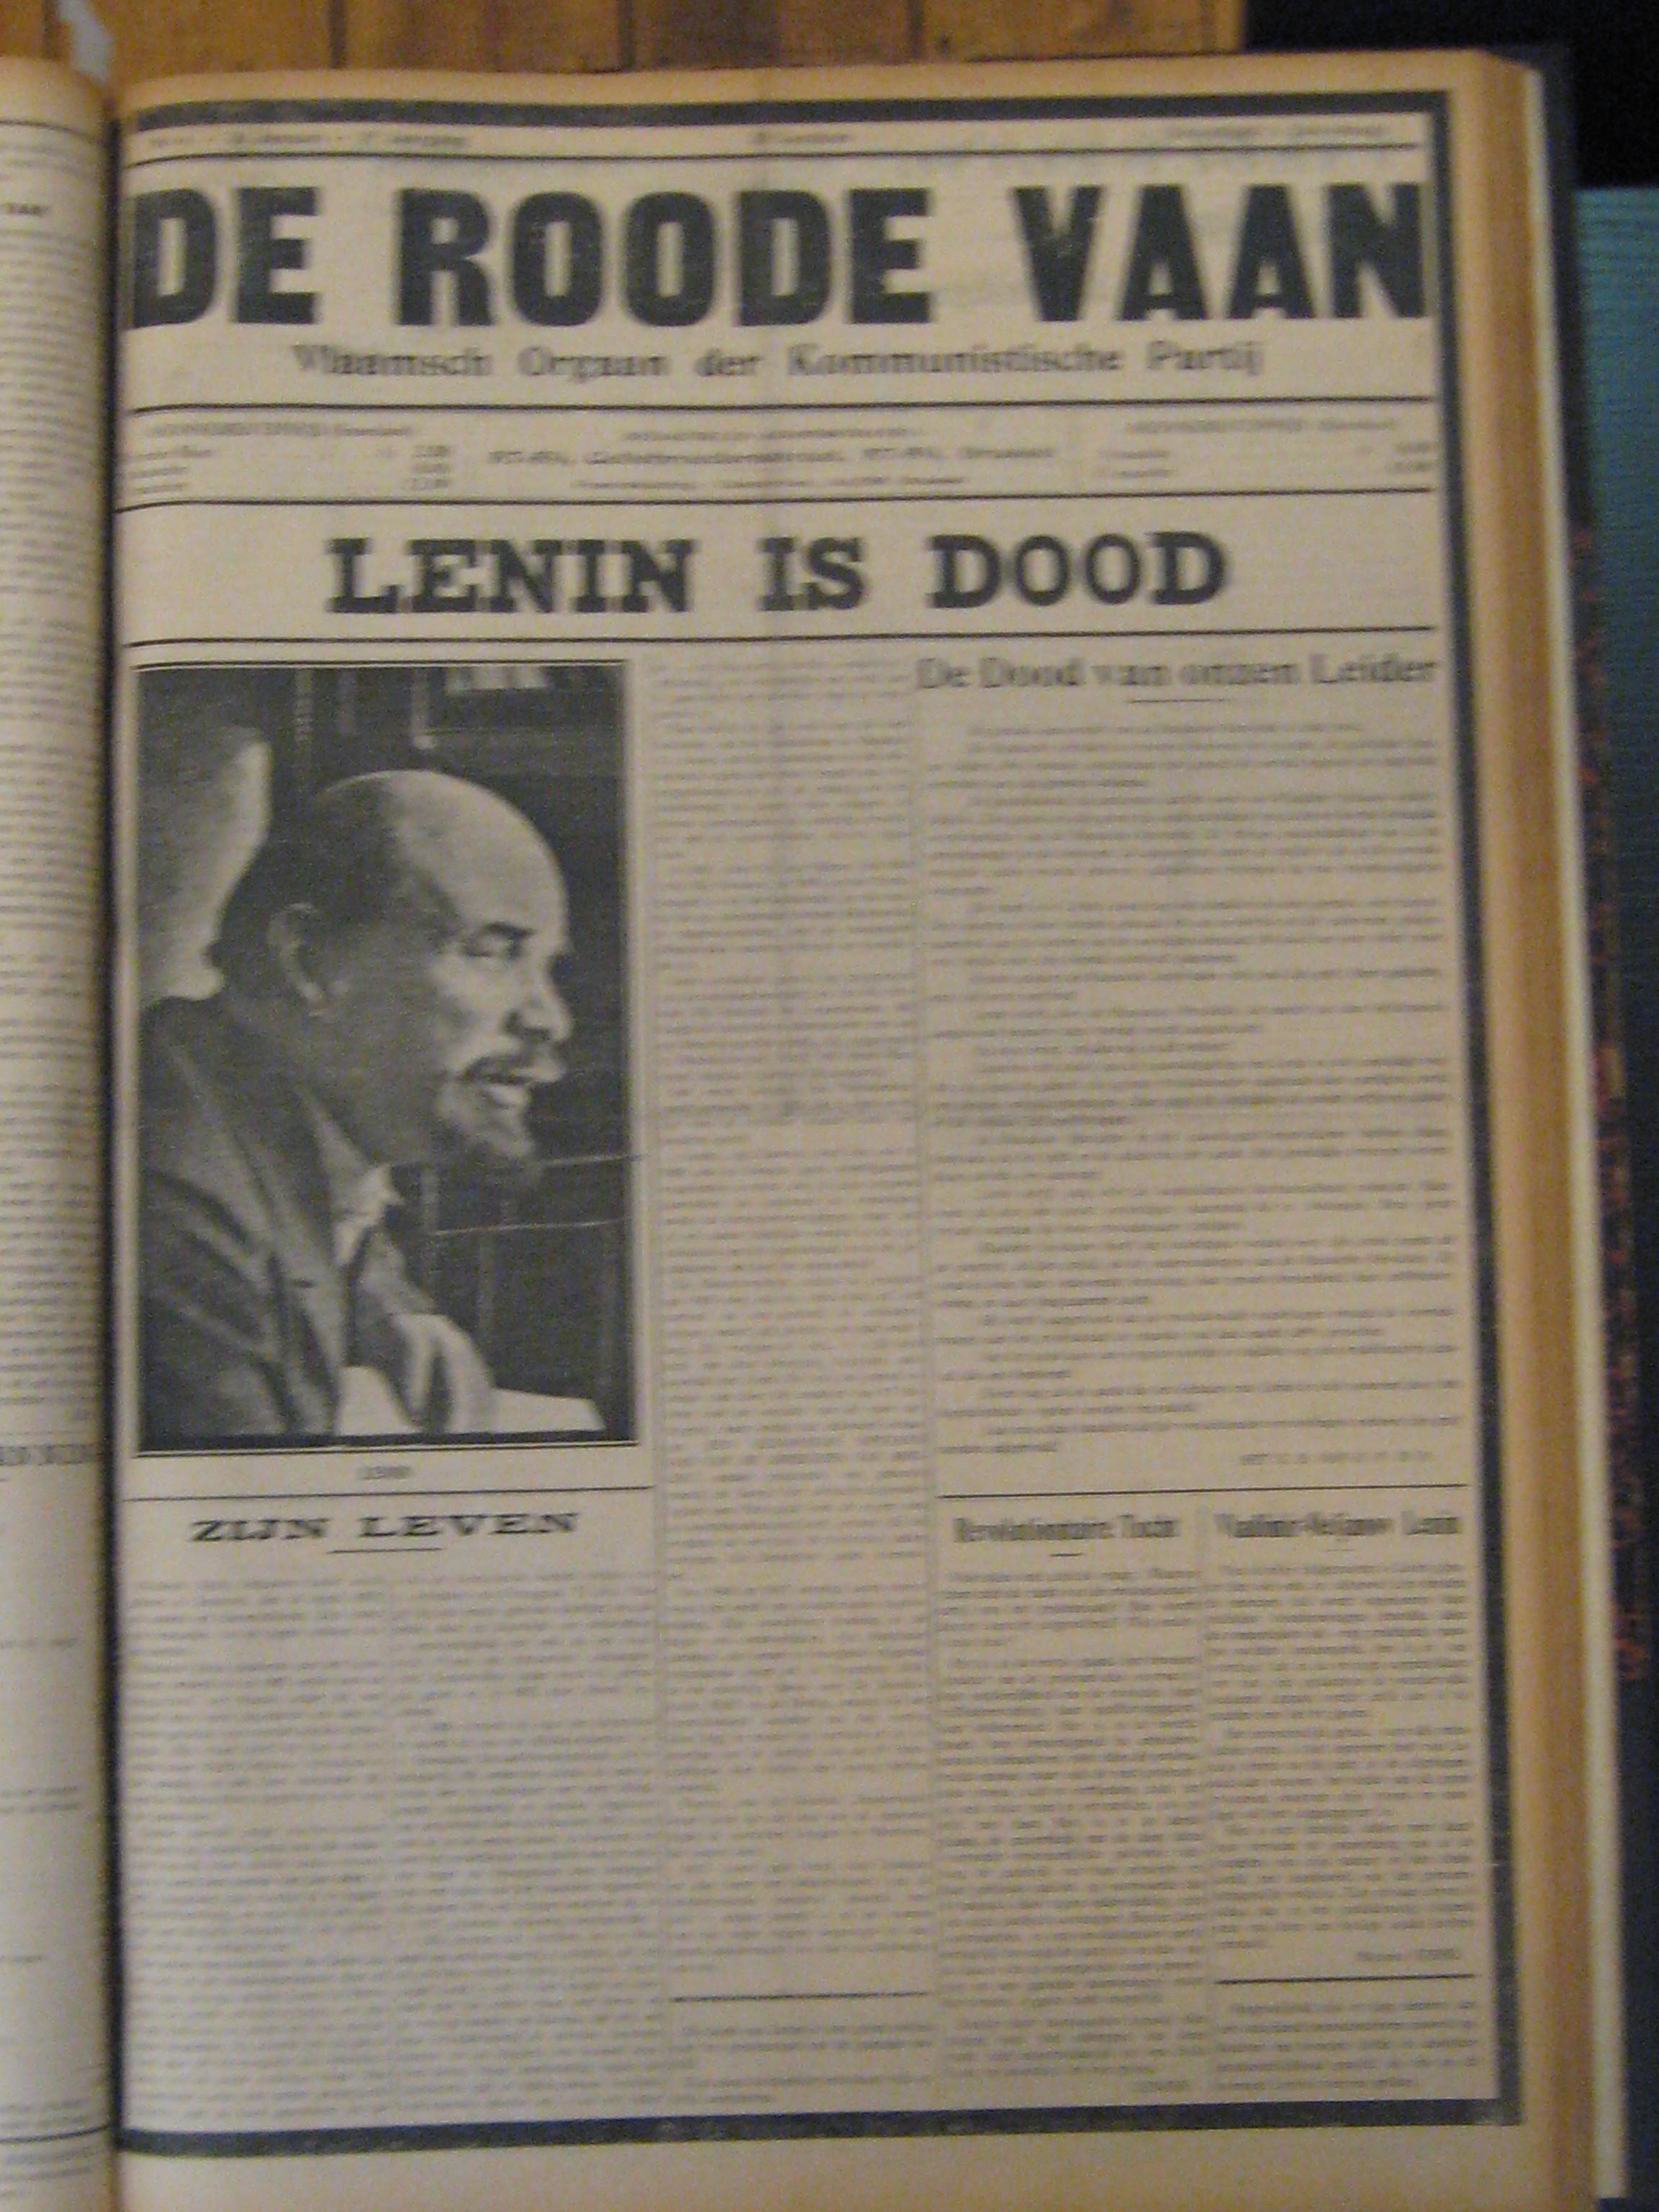 Lenin is dood, 1924